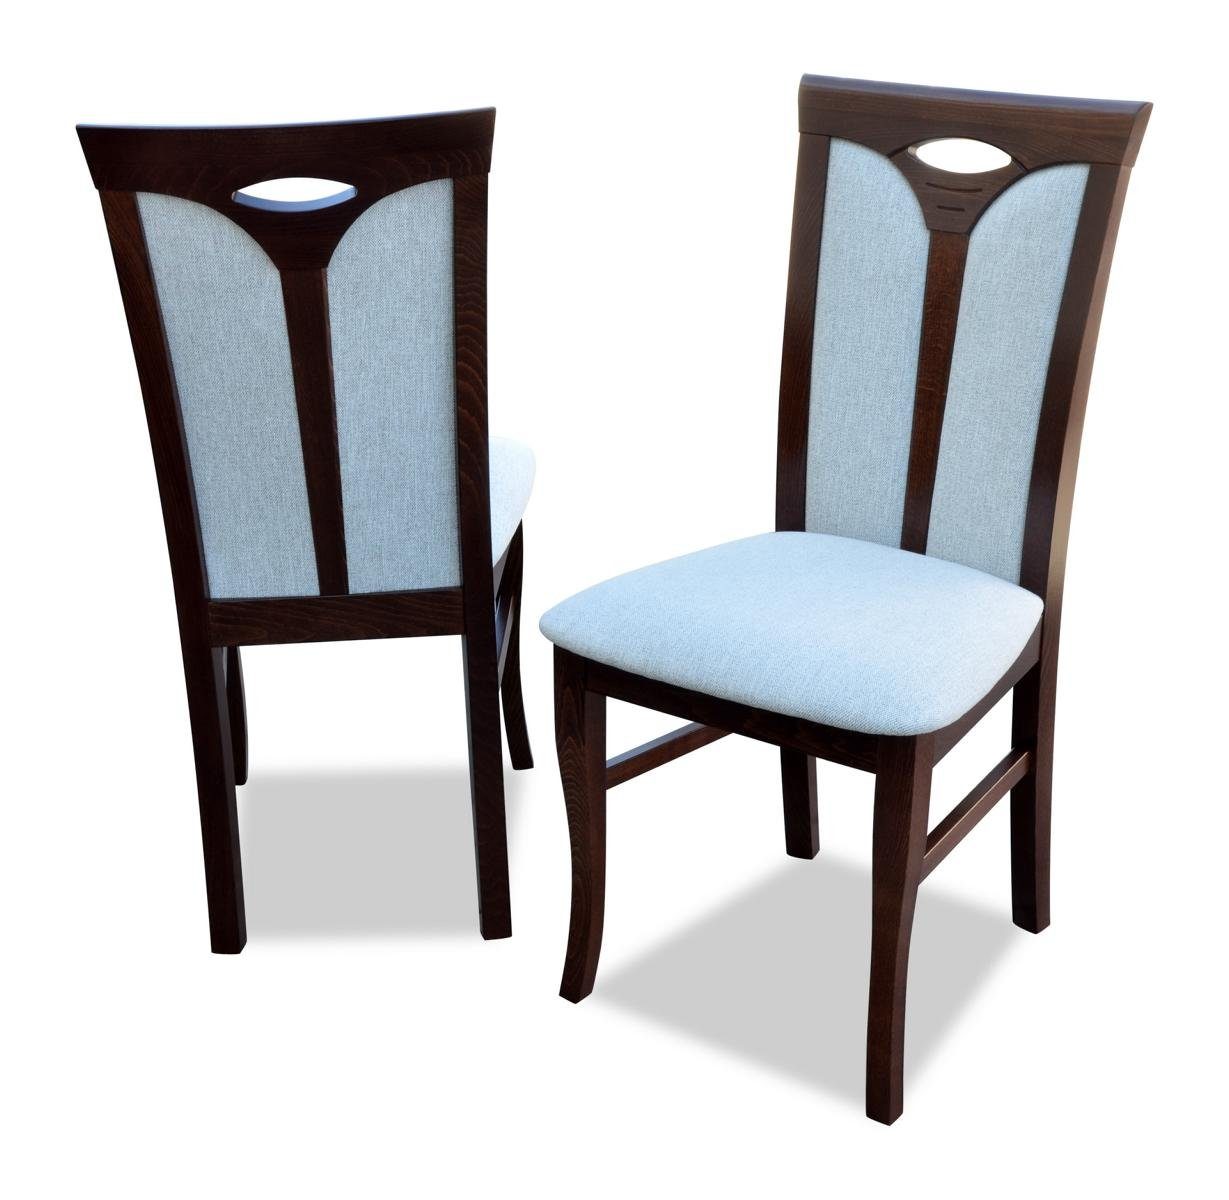 JVmoebel Stuhl, Esszimmer 1x Stuhl Stühle Polster Holz modern Designer Lehn Sitz Sessel